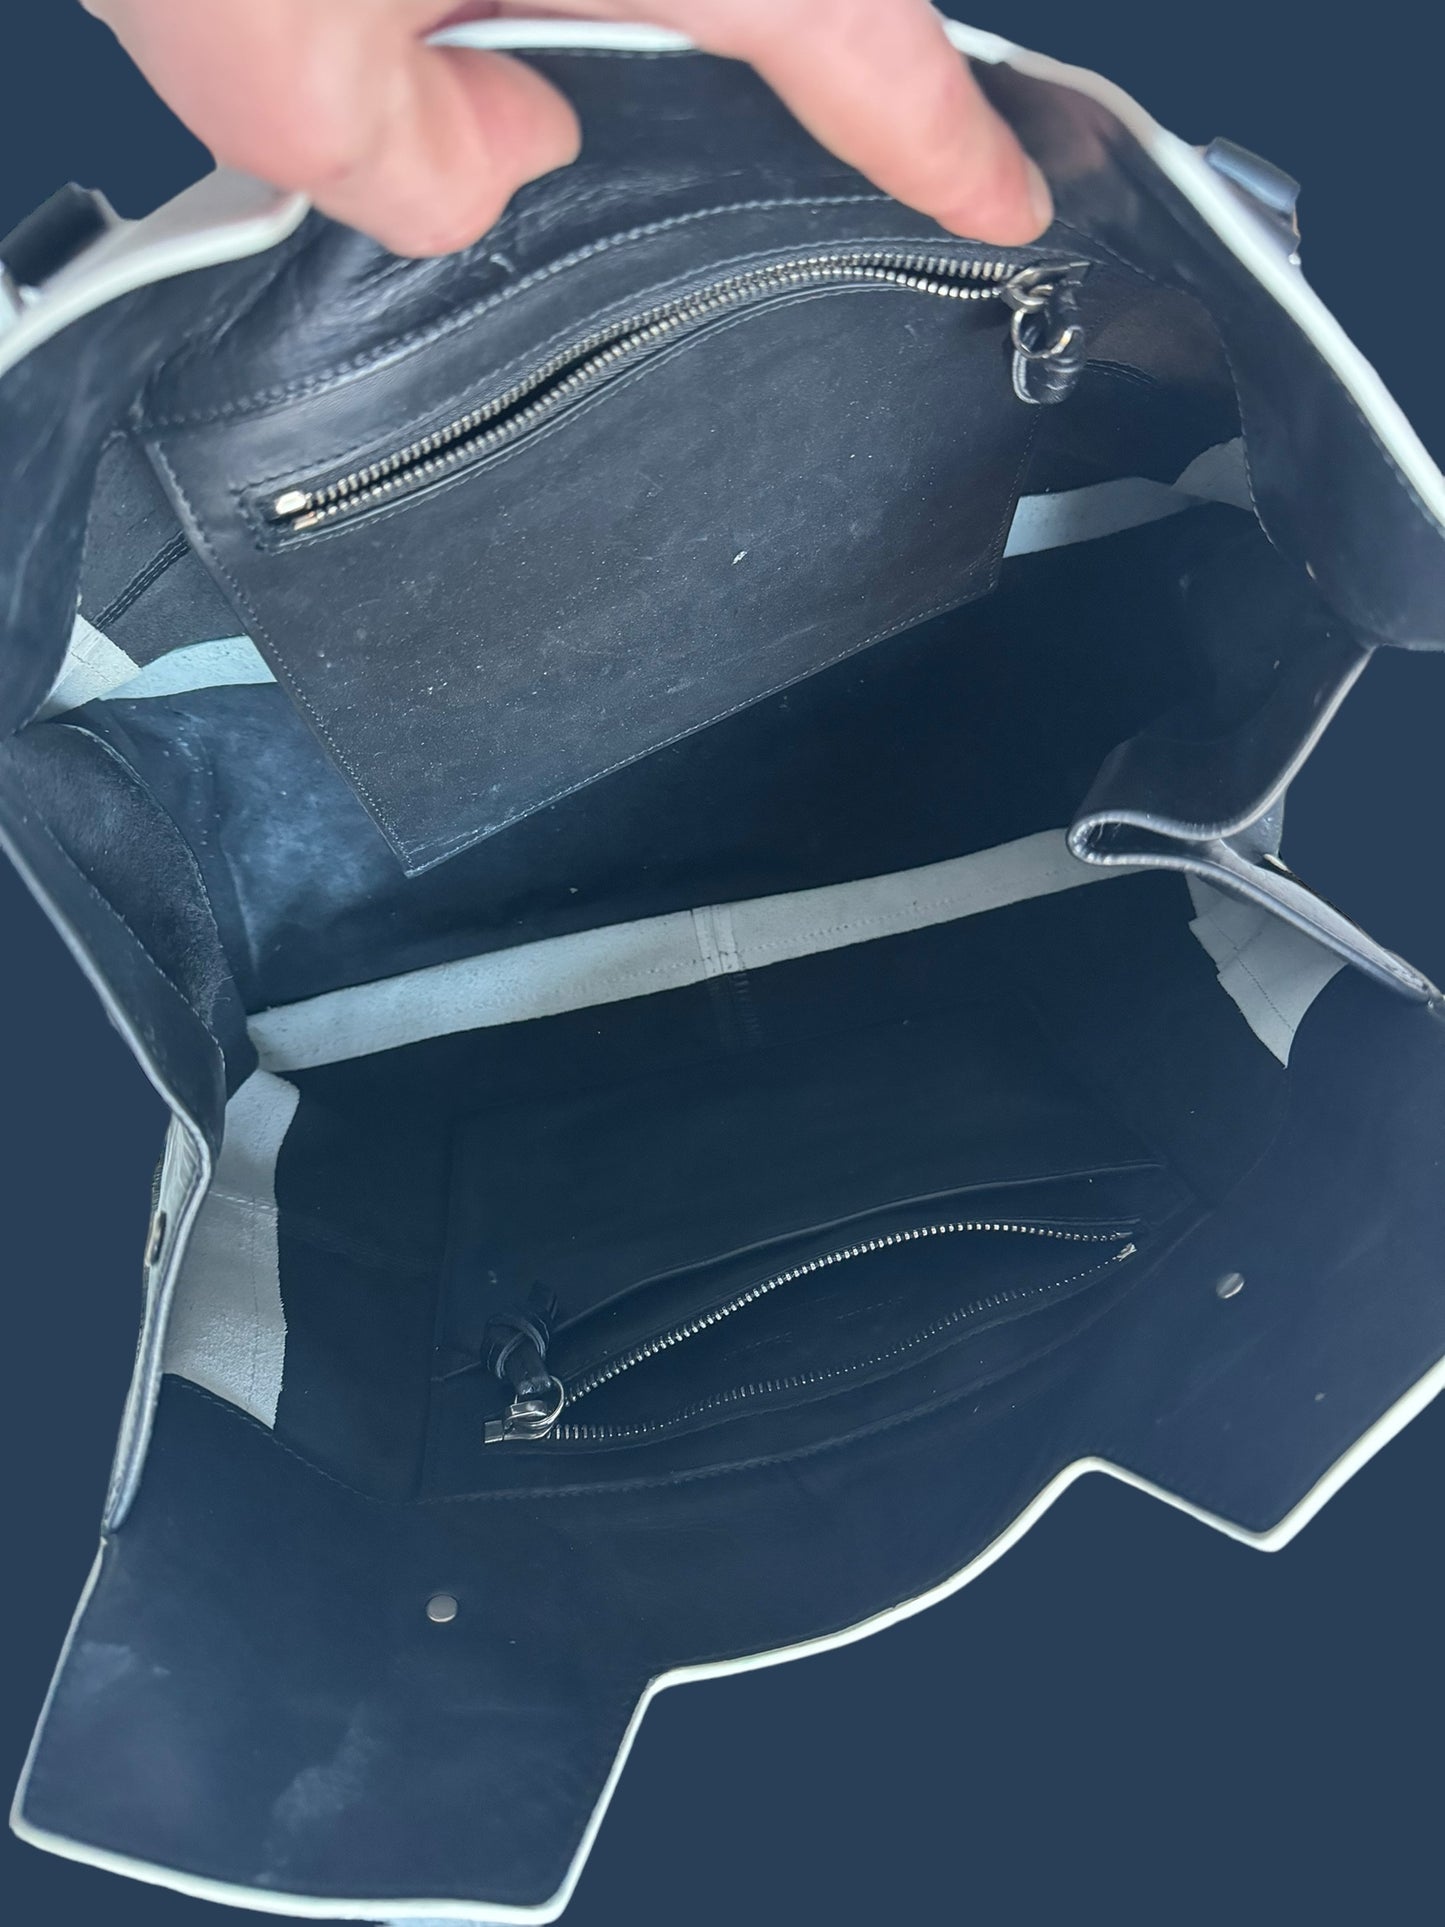 PROENZA SCHOULER black & white purse